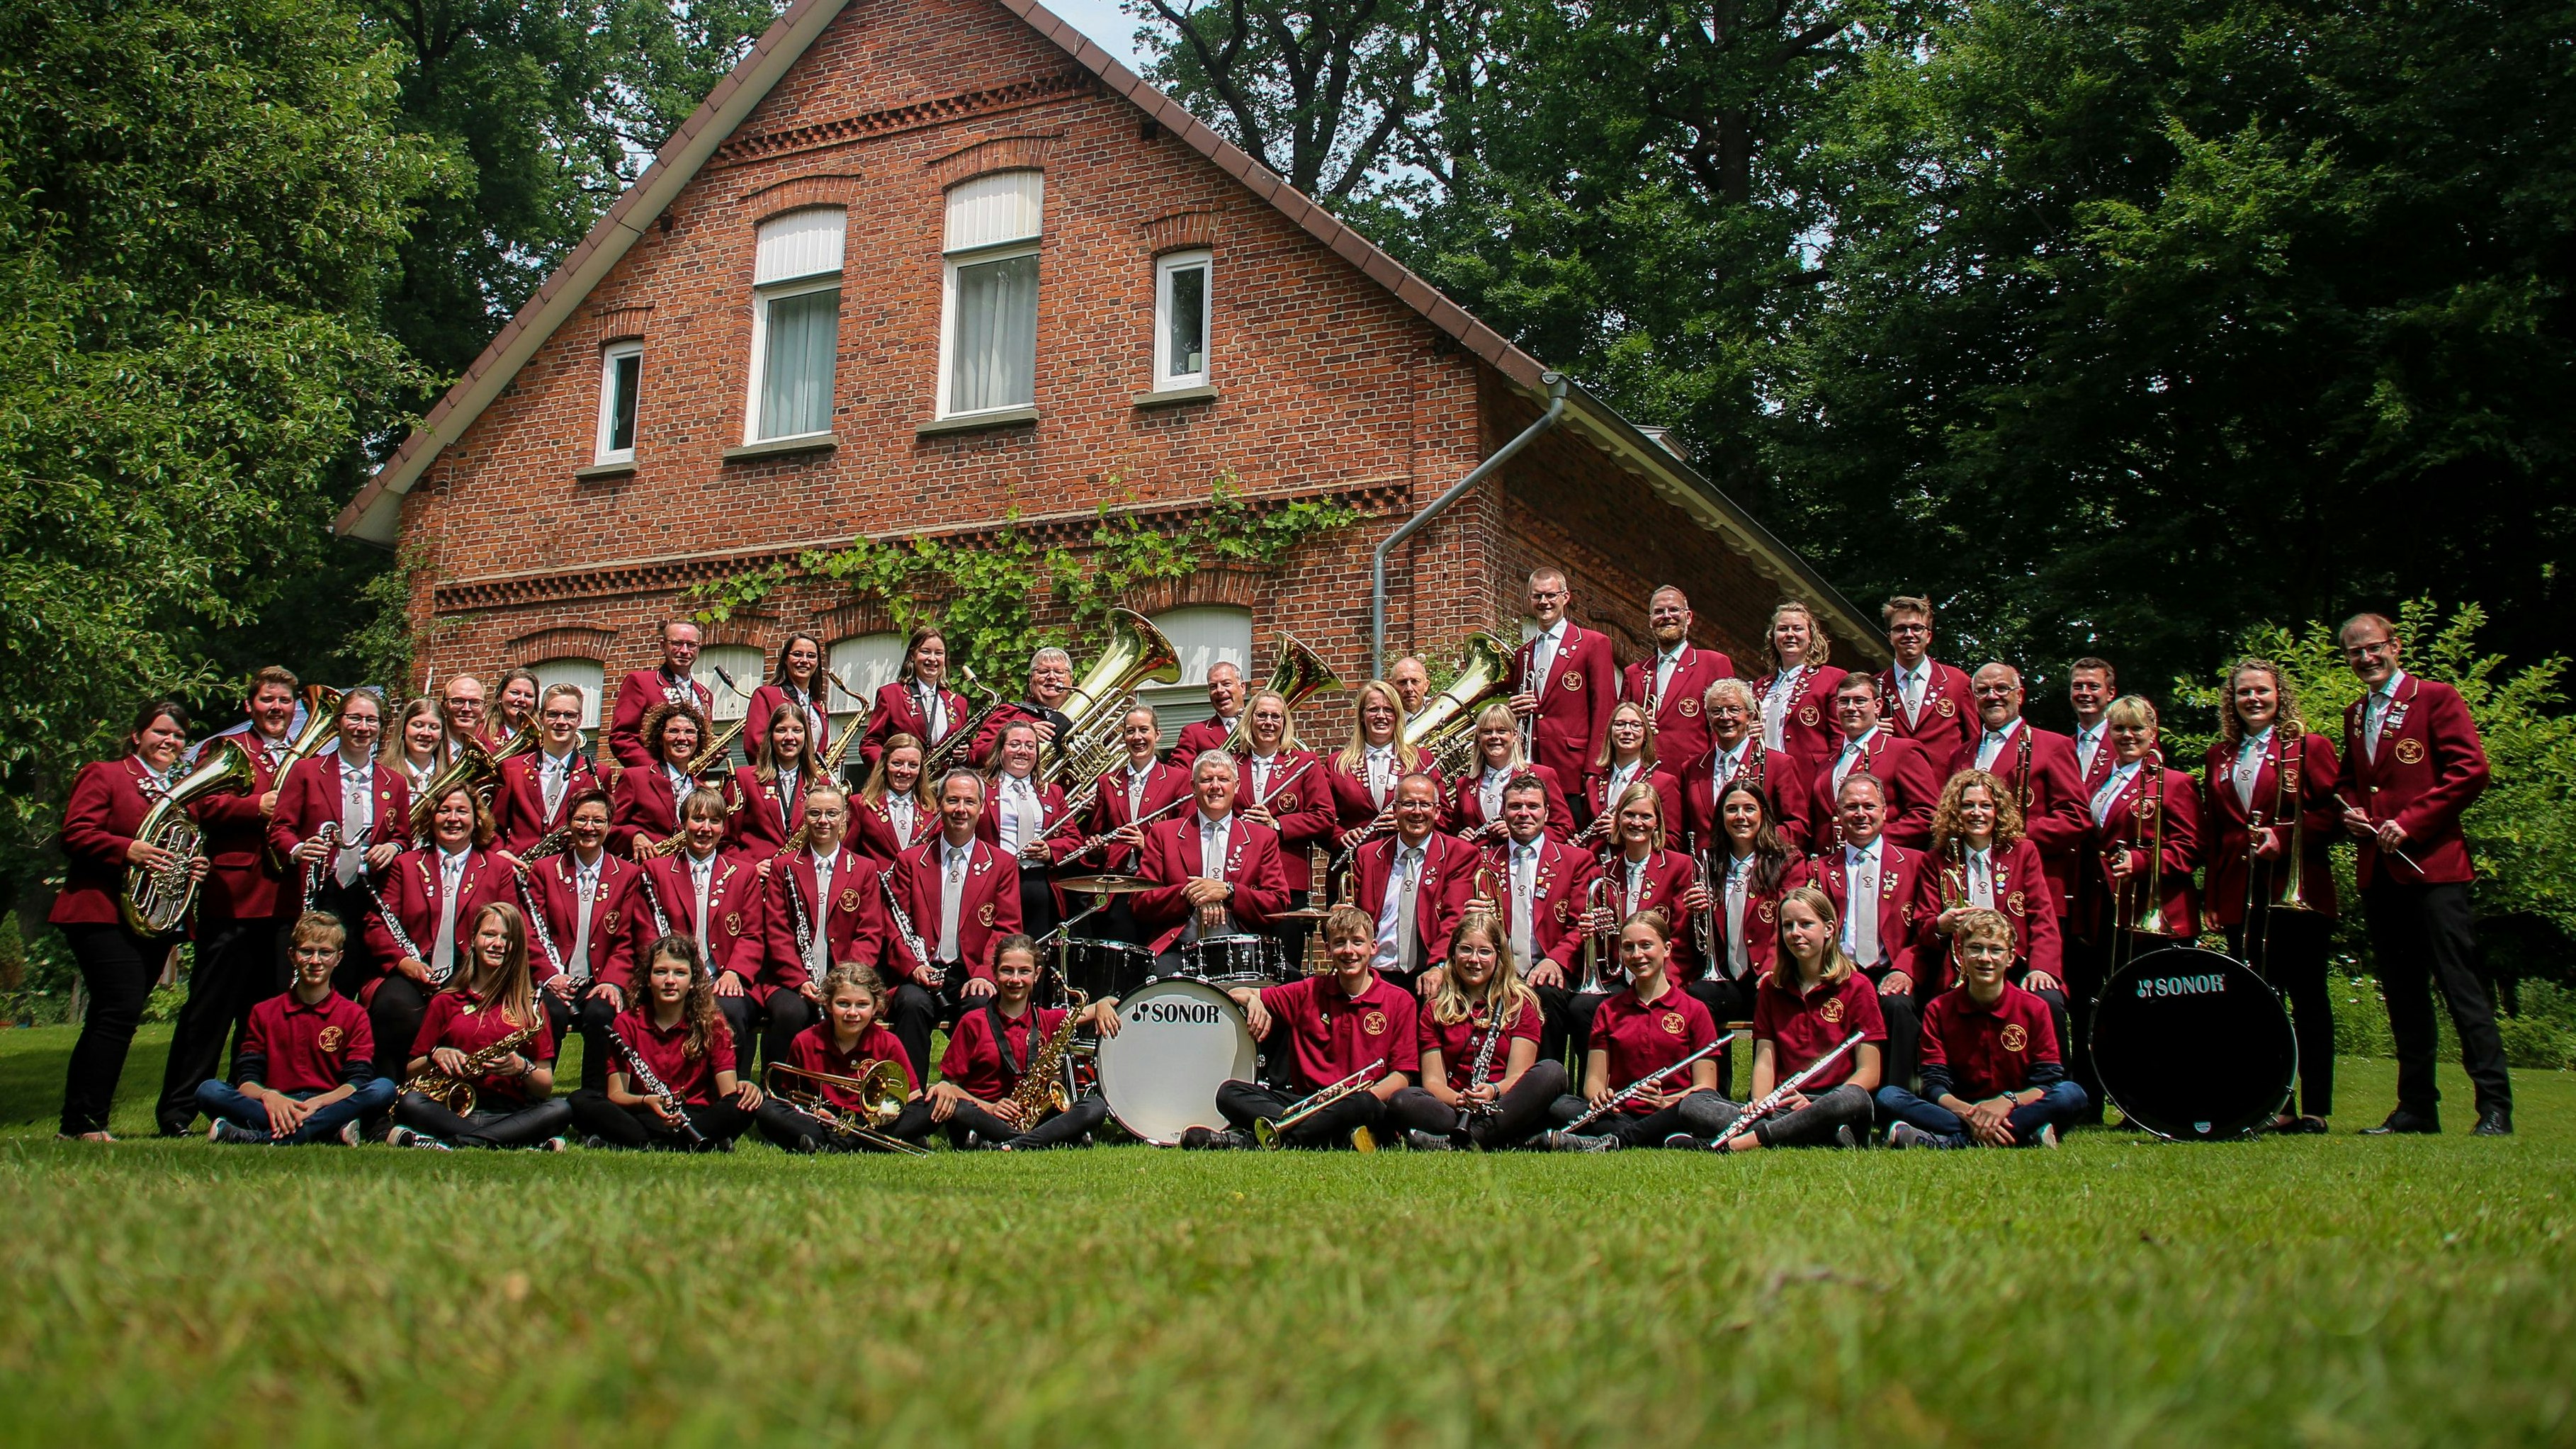 Der Musikverein Visbek besteht aktuell aus 60 Mitgliedern, die beim Festwochenende auftreten werden. Foto: Heinzel